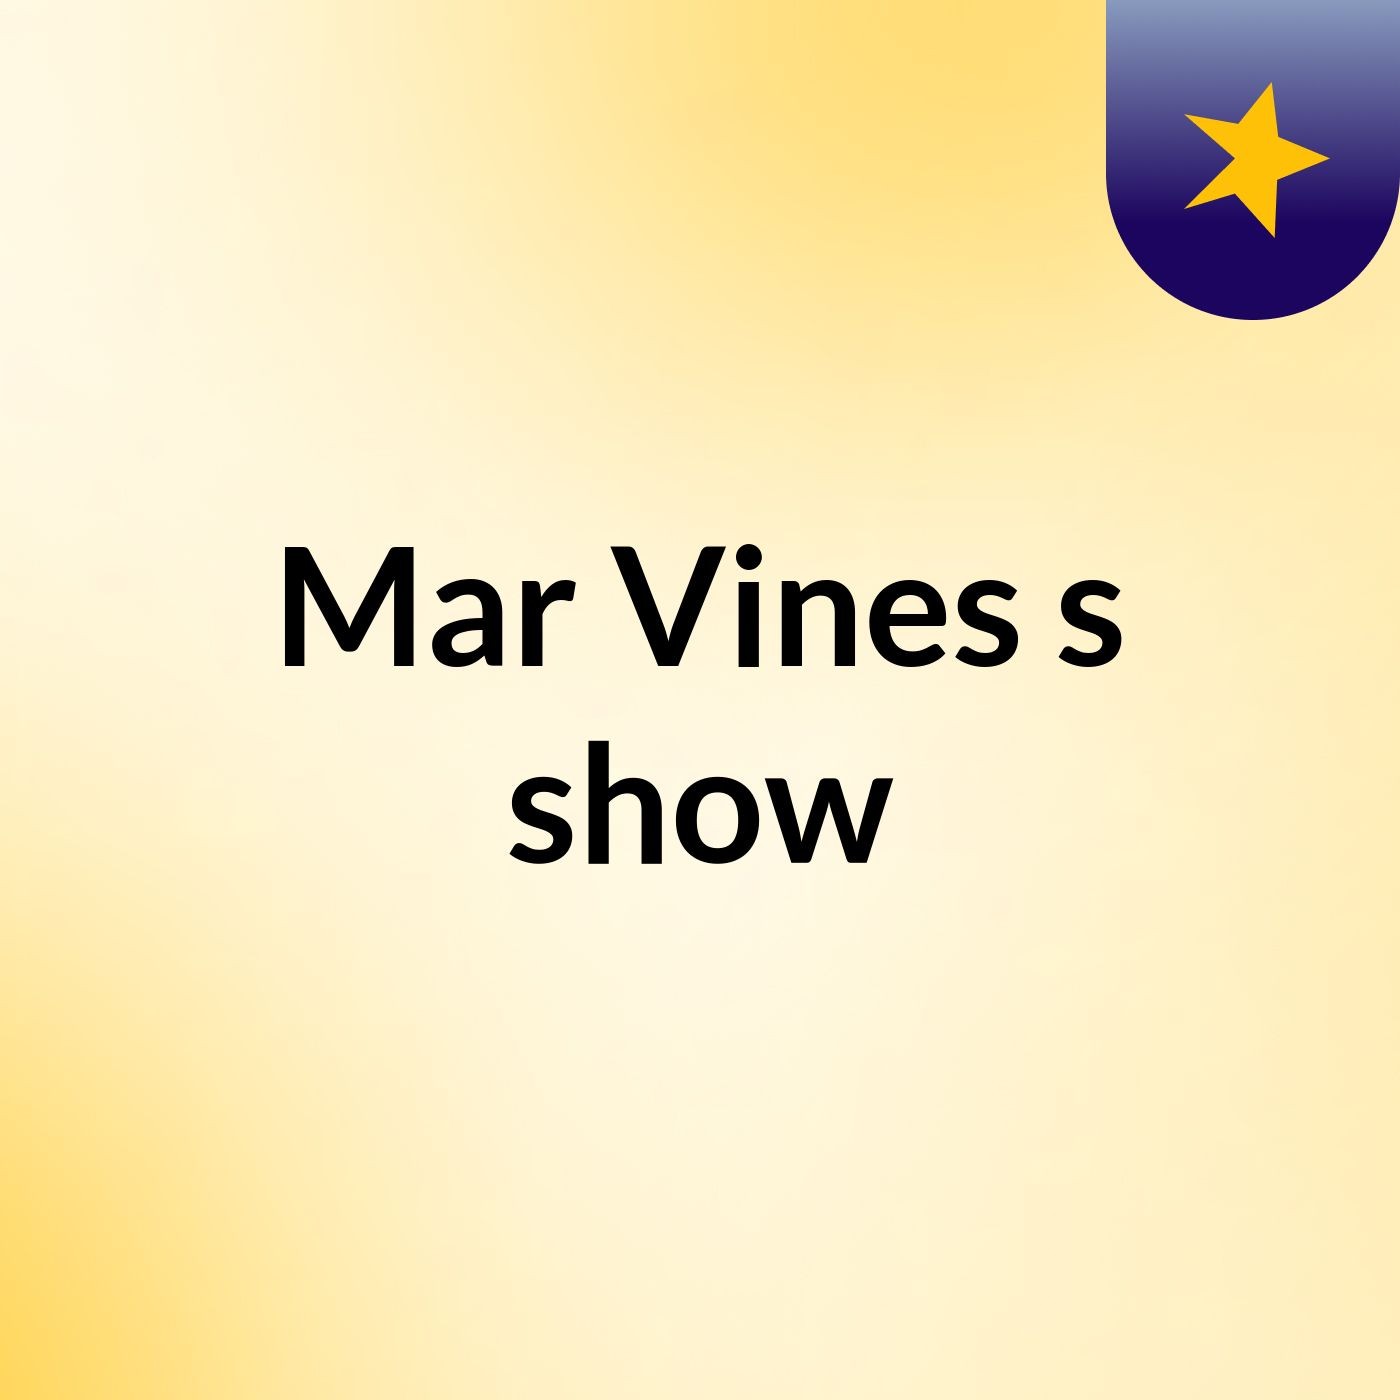 Mar Vines's show